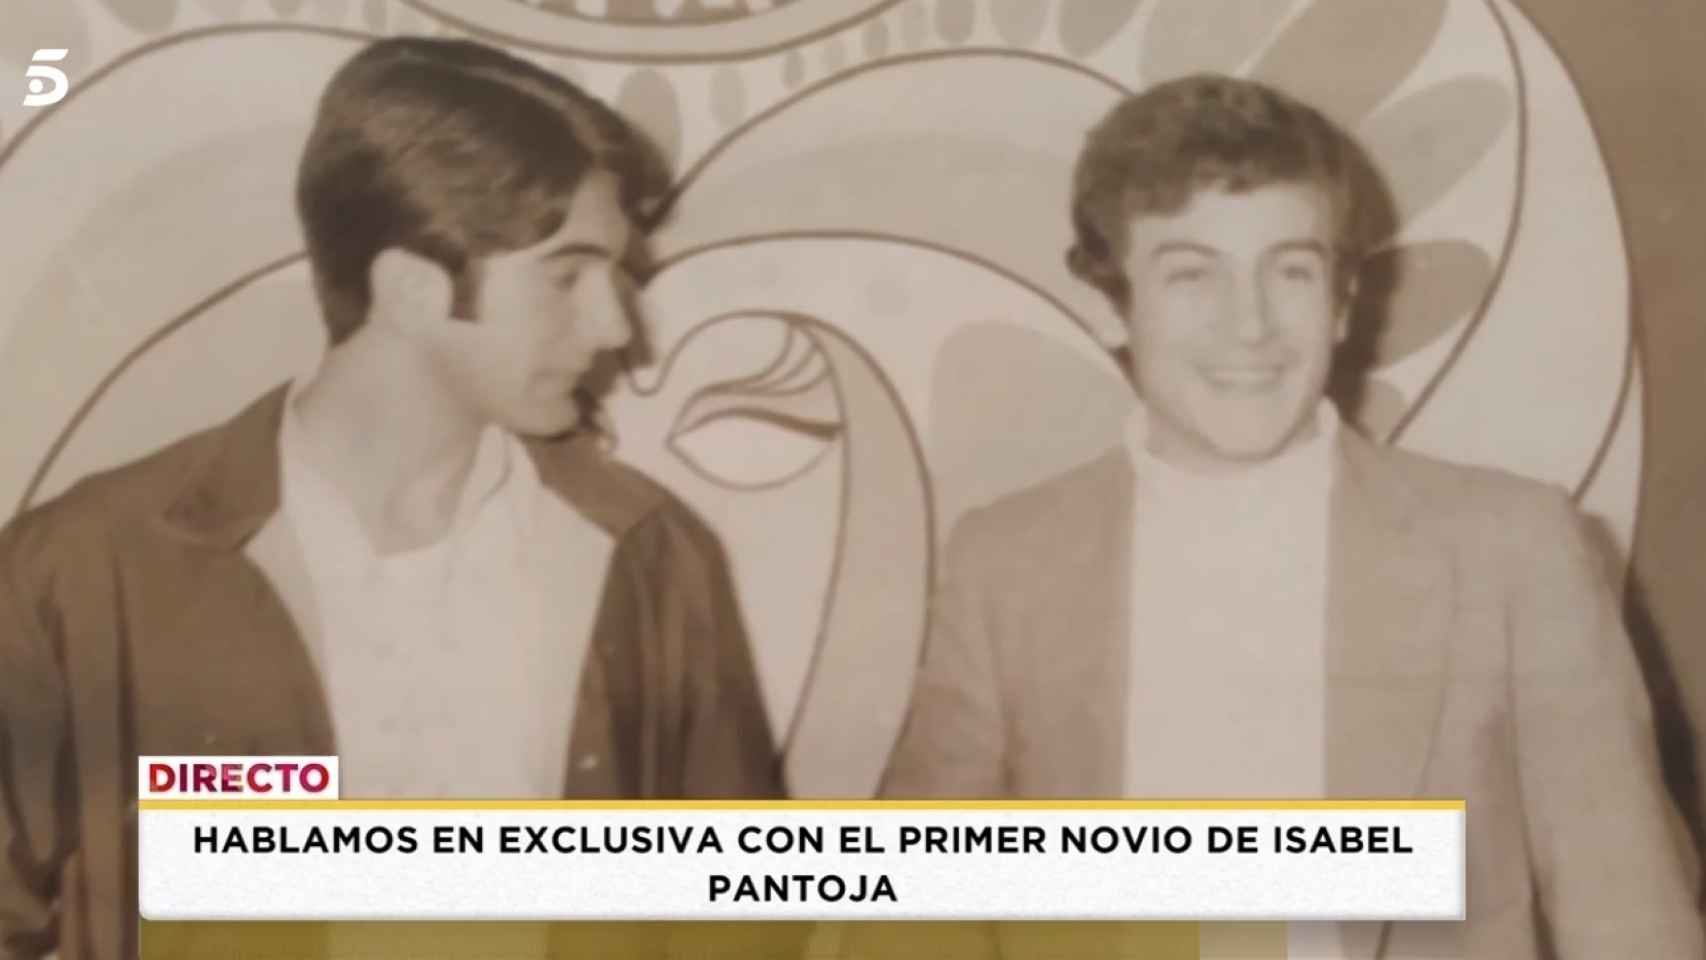 Francisco Cotes e Isabel Pantoja comenzaron una relación sentimental en el año 1970.